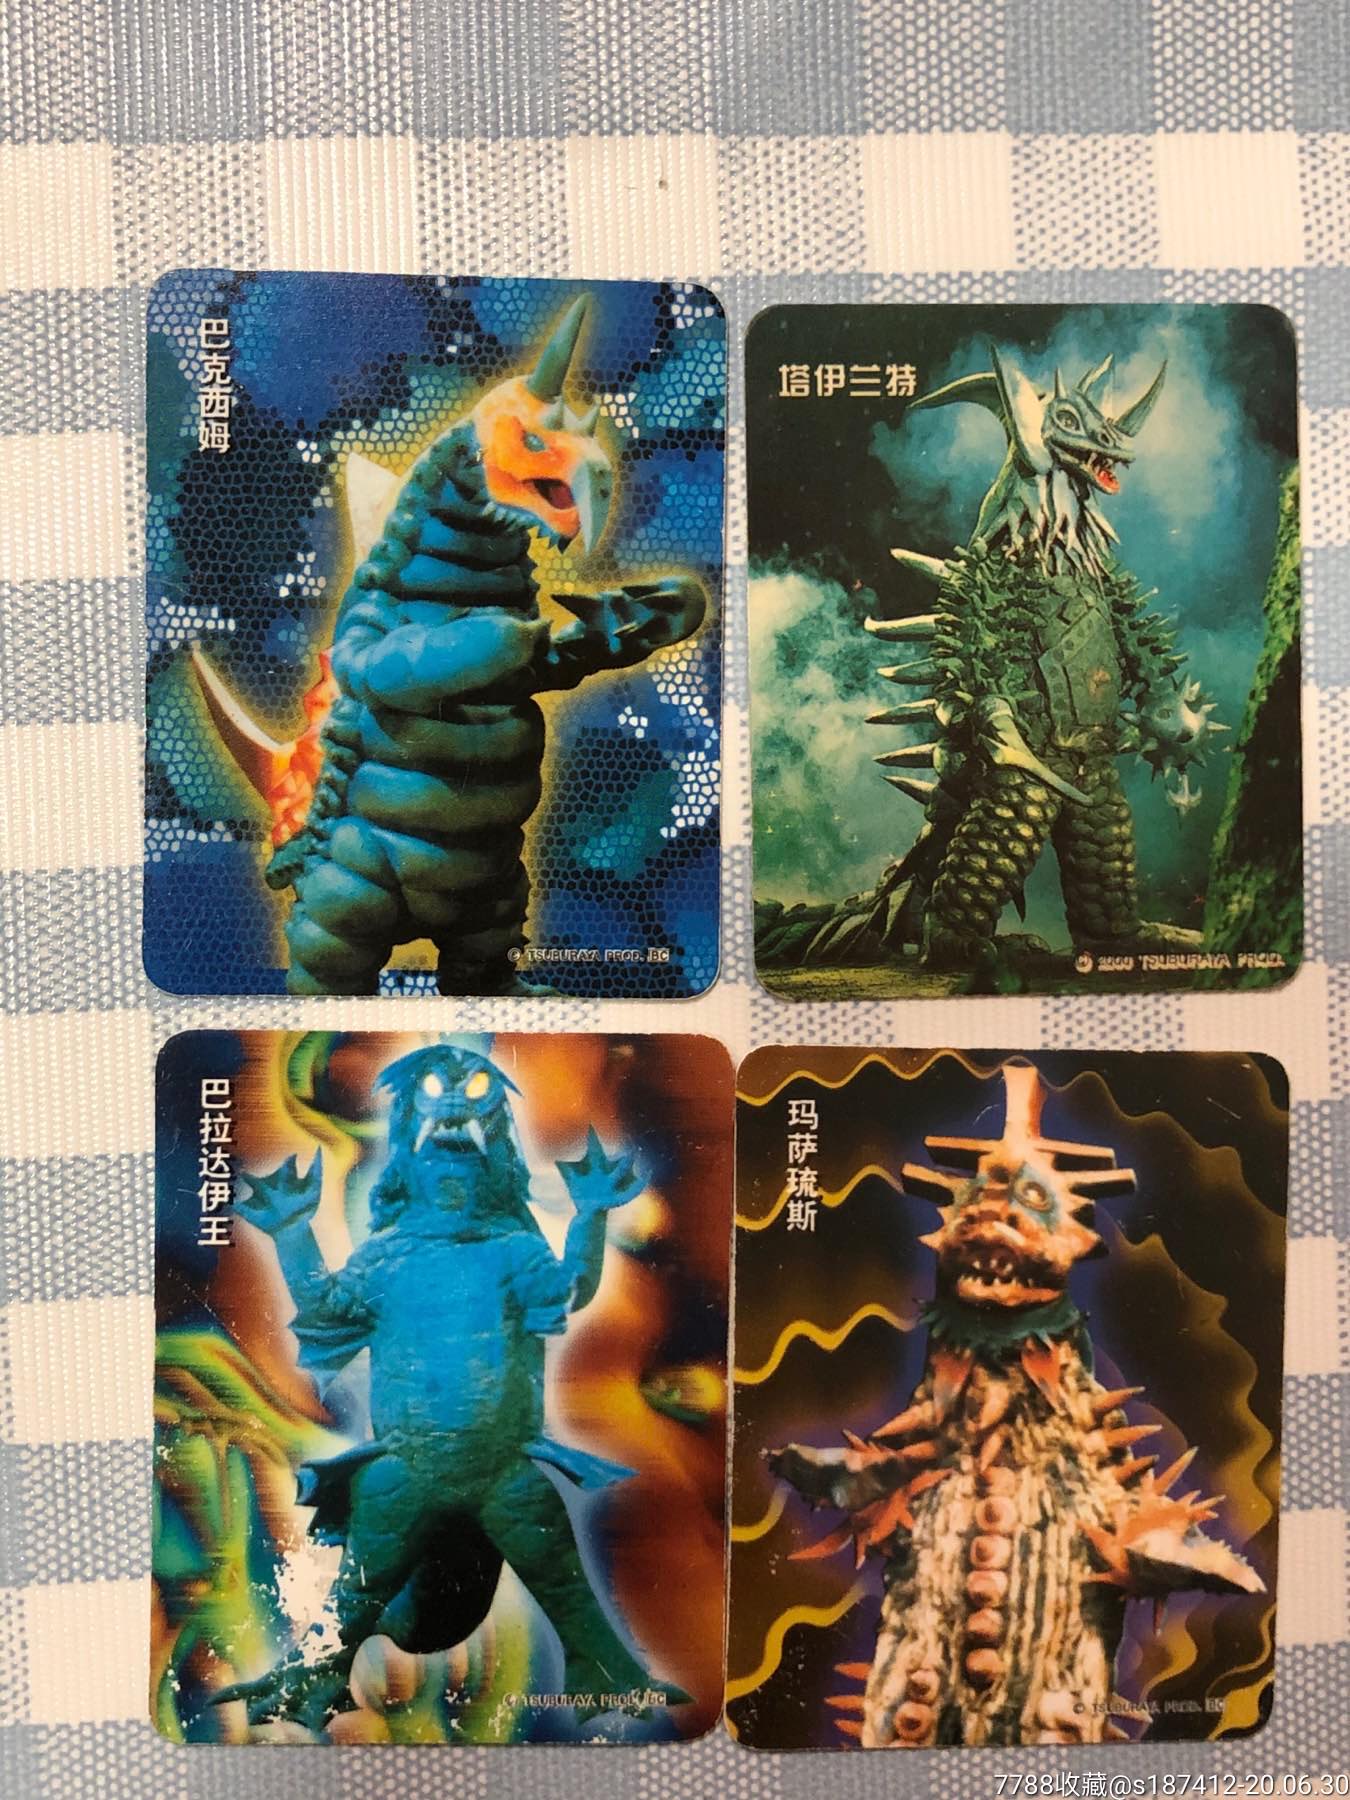 奥特曼怪兽勇士大集合,食品卡,经典动漫食品卡,21世纪初,普通卡,长